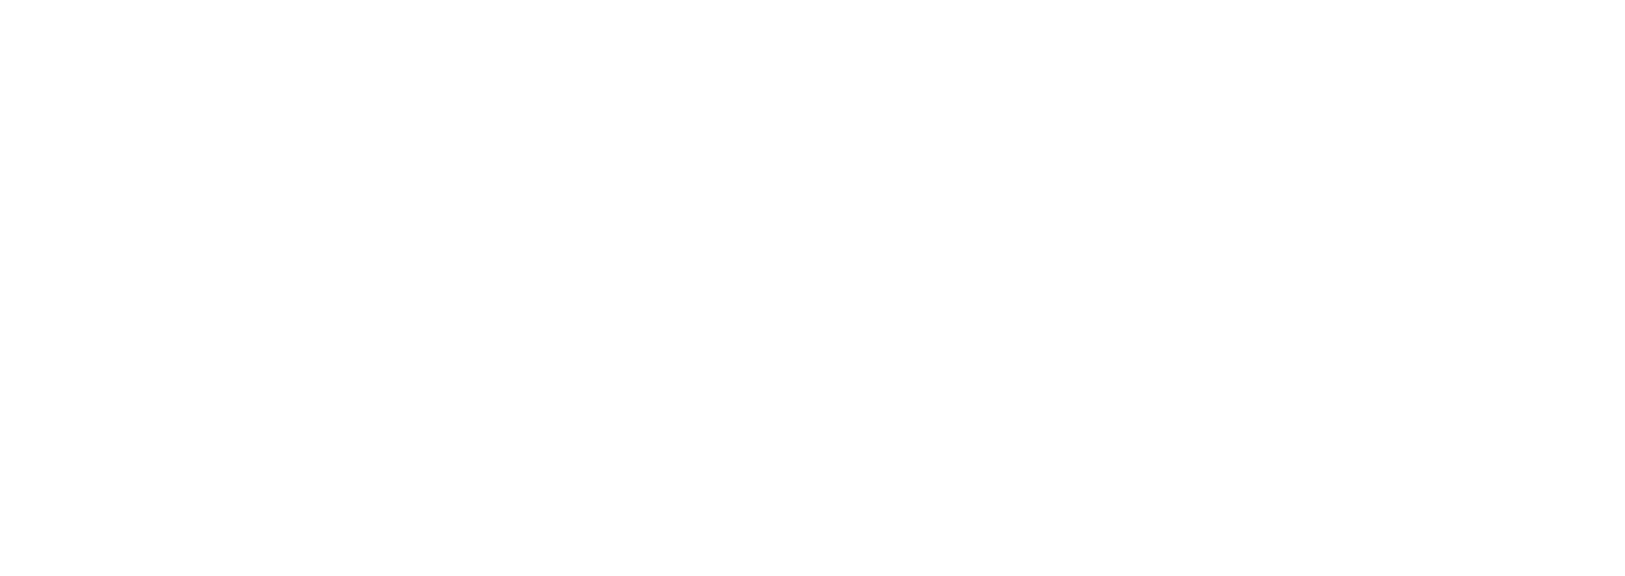 Laura Hartwig – Premium Wines